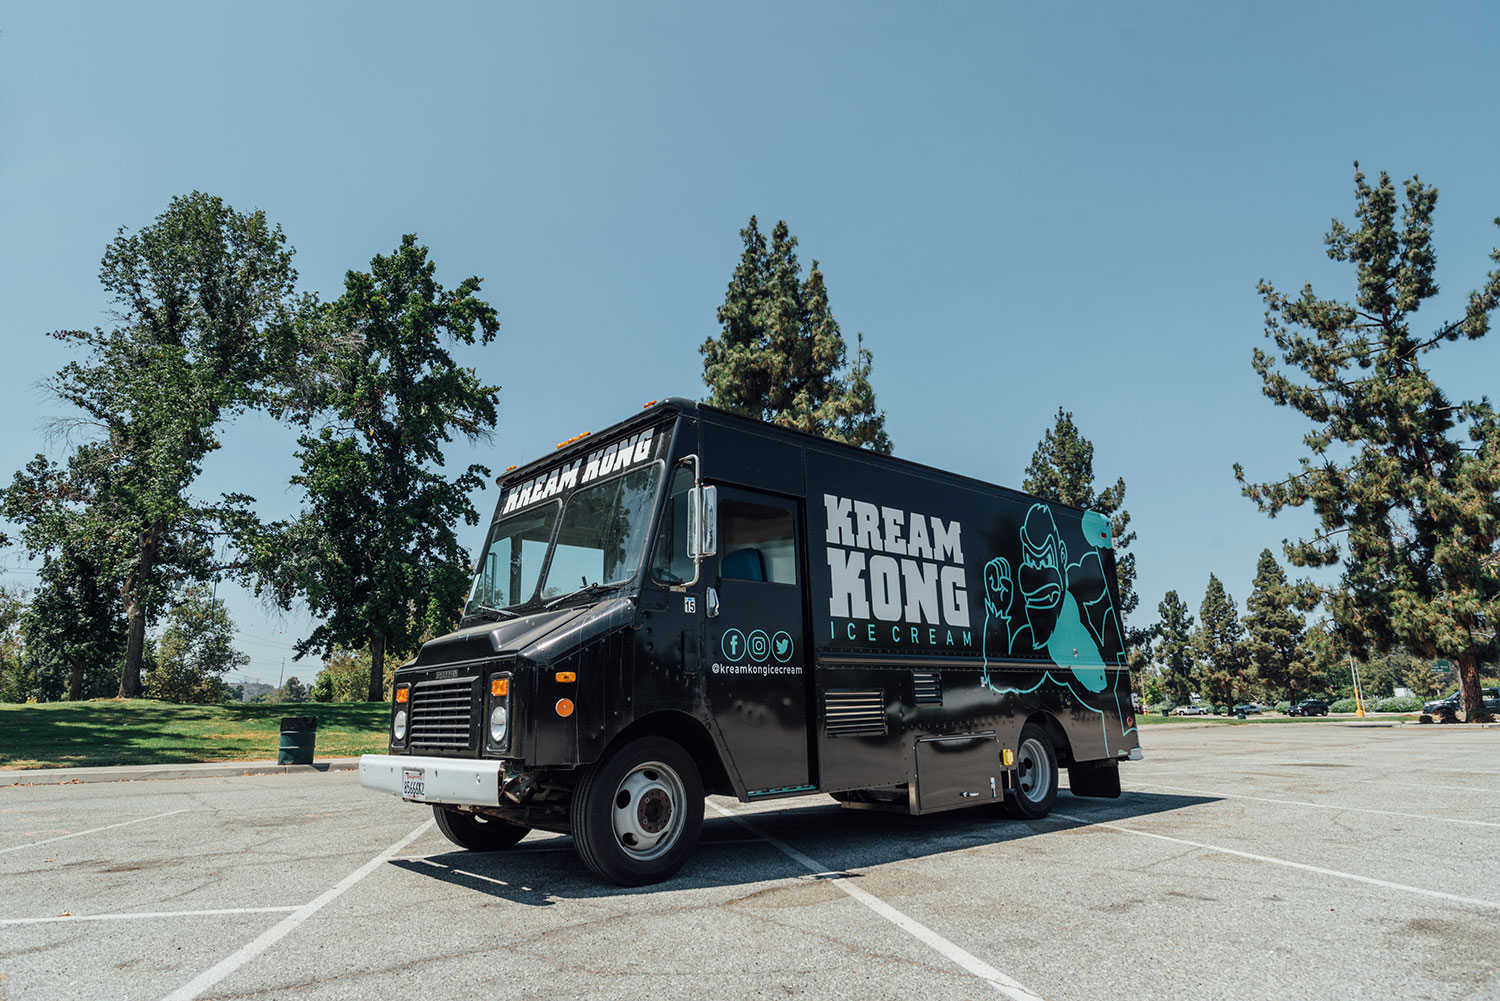 Kream Kong Food Truck Design